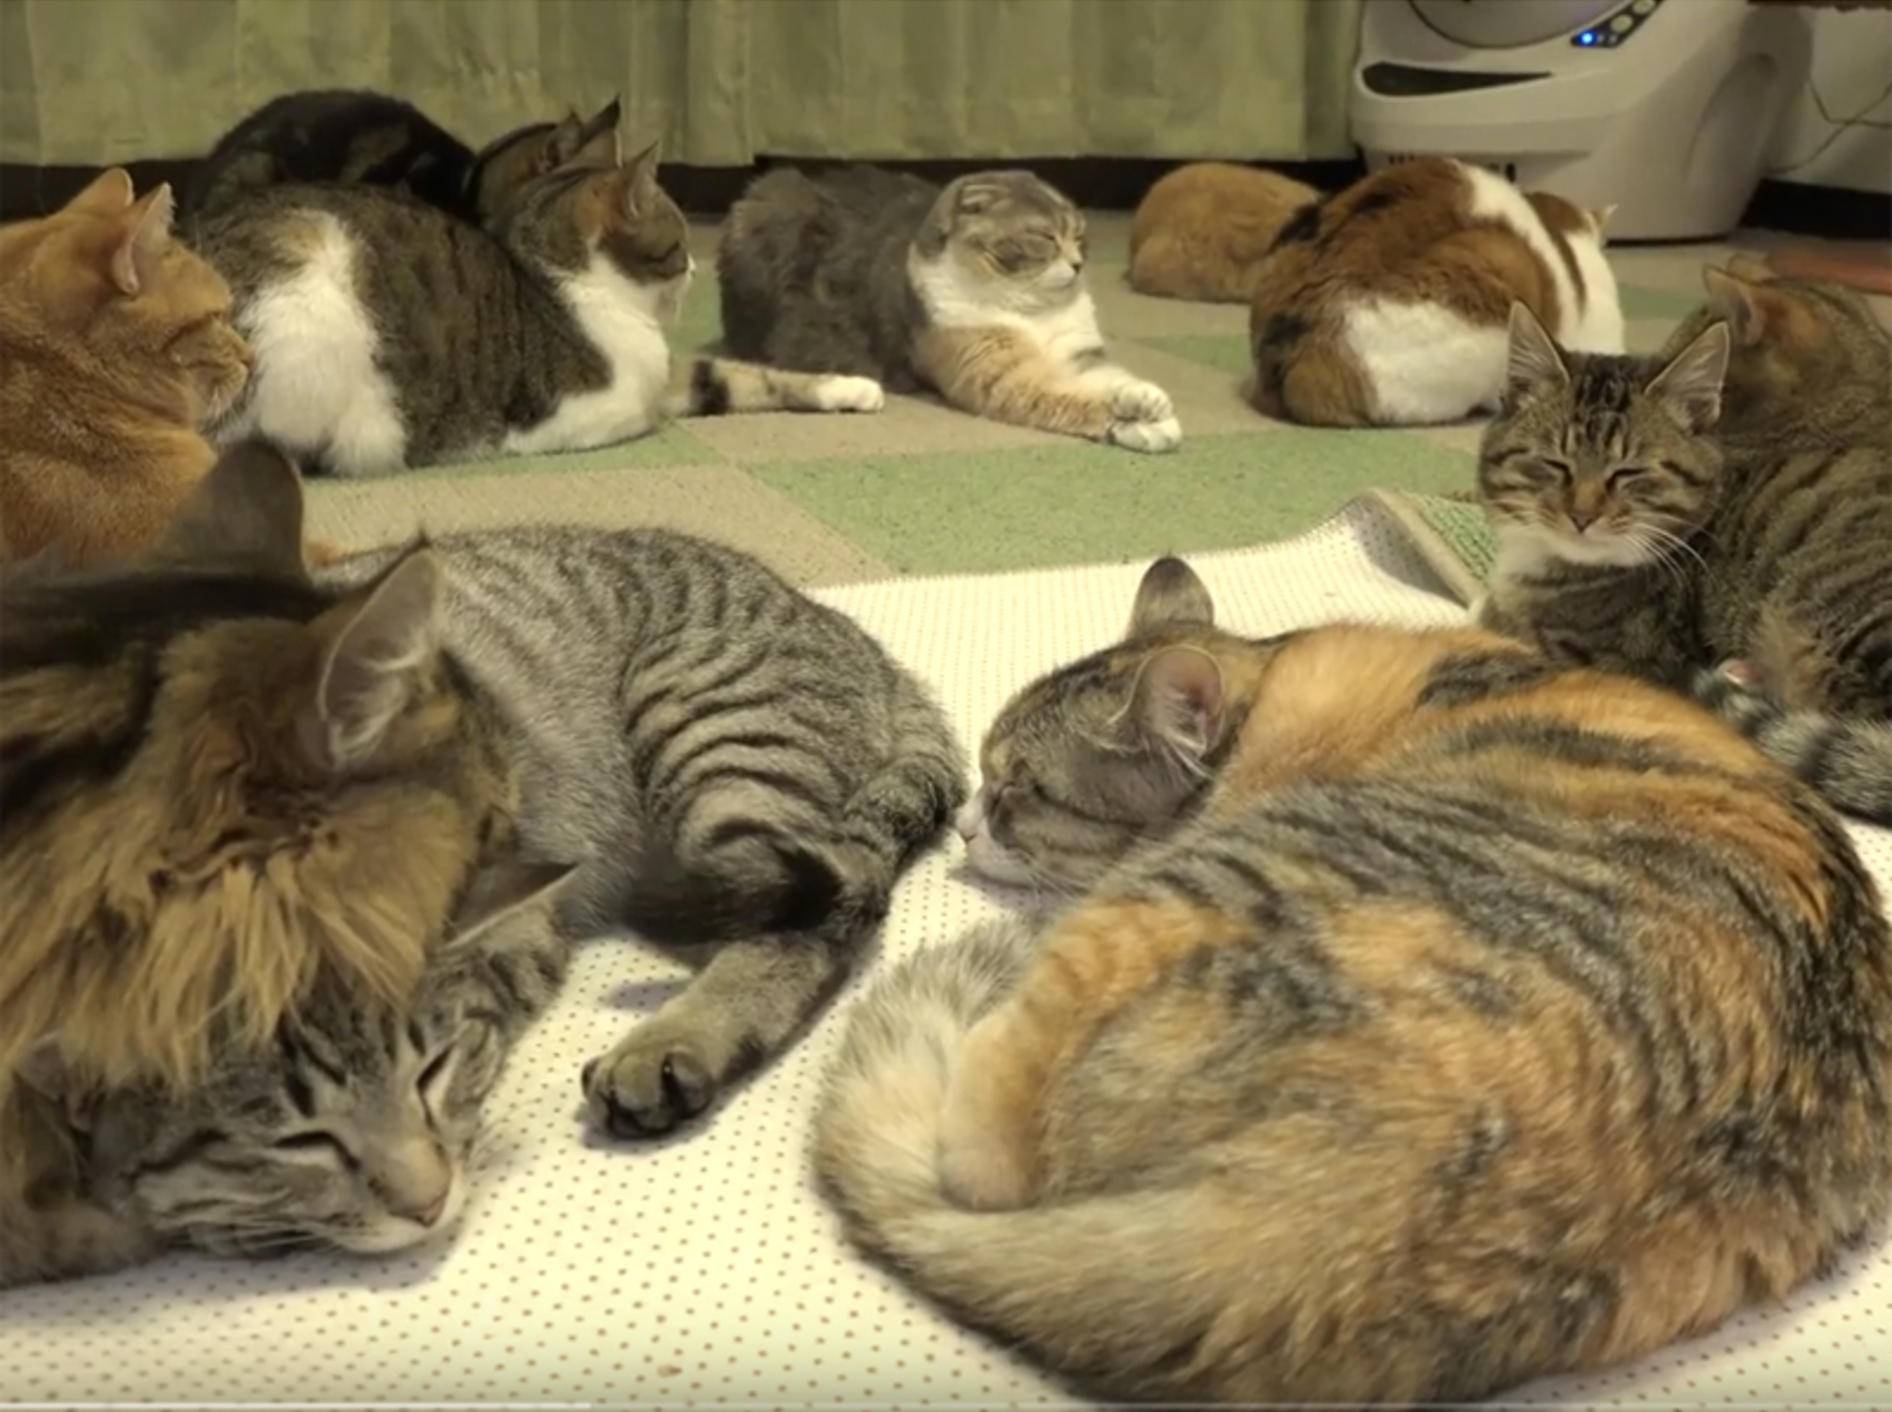 14 Katzen machen ein kuschelig-warmes Nickerchen – YouTube / 10 Cats.